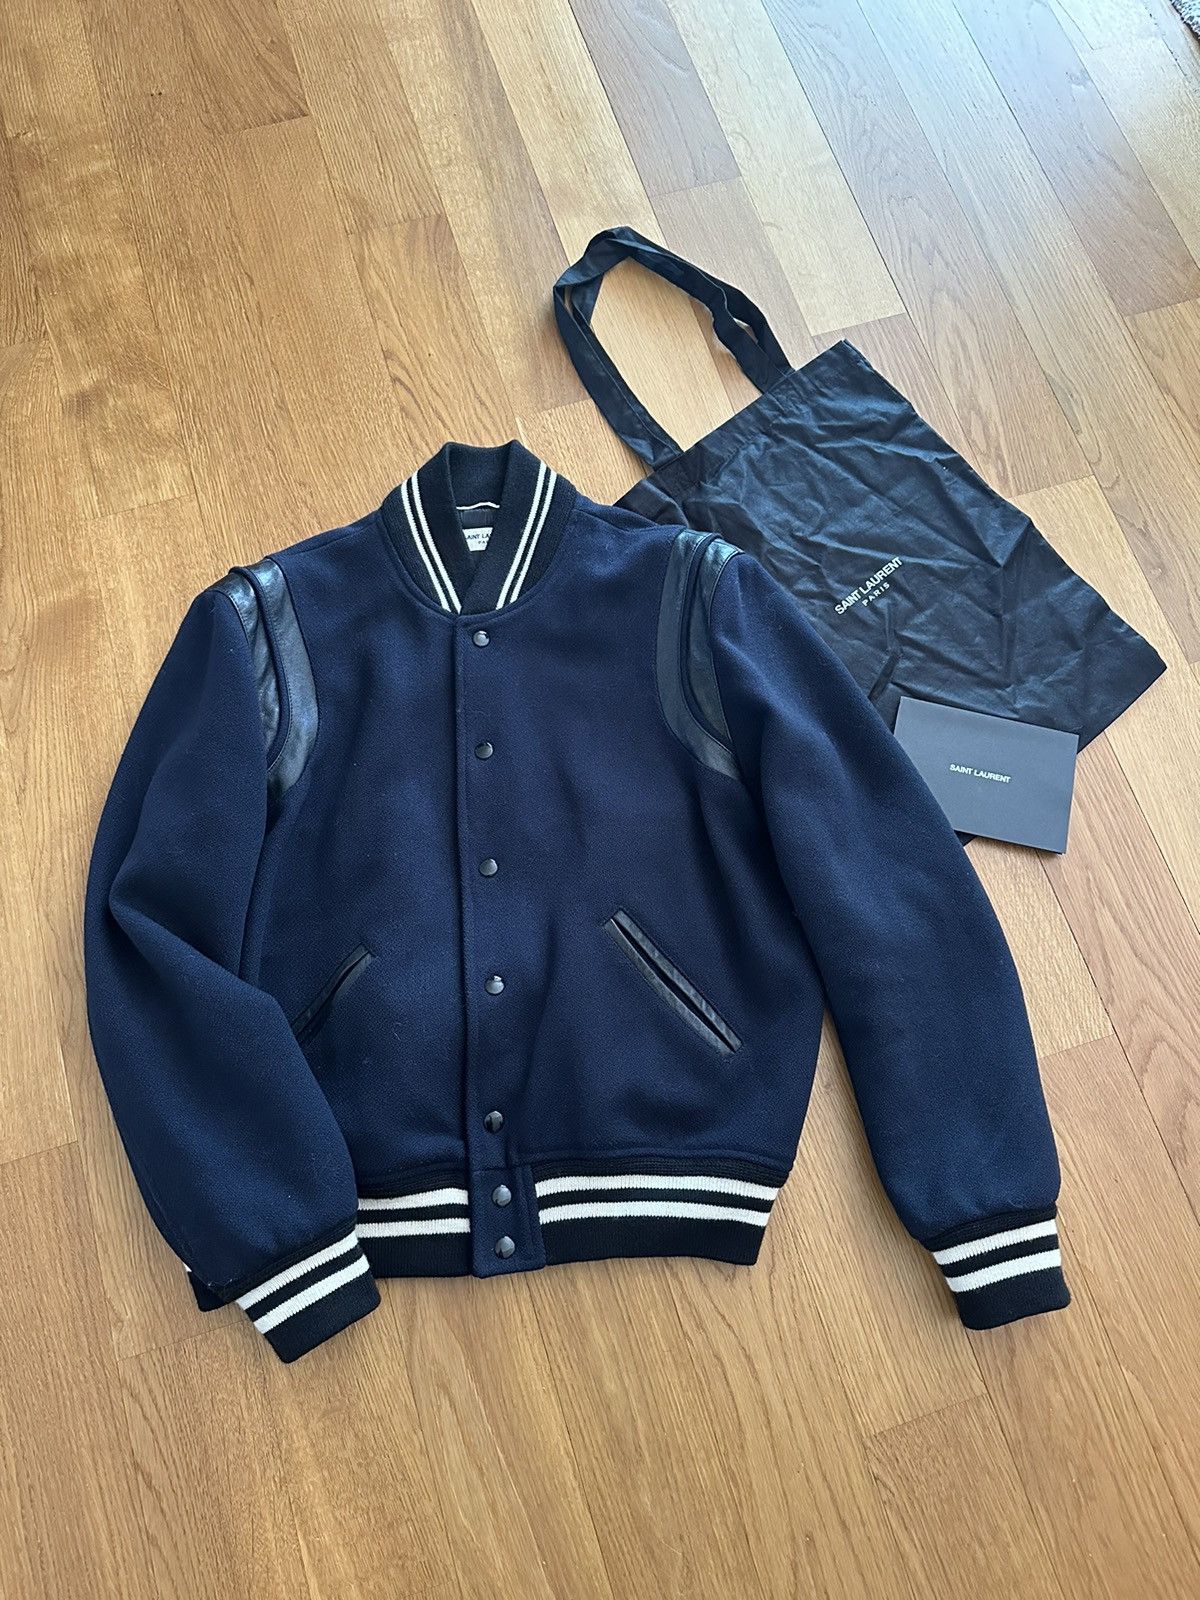 Saint Laurent Paris Saint Laurent Hedi era Teddy Varsity Jacket size 46 |  Grailed